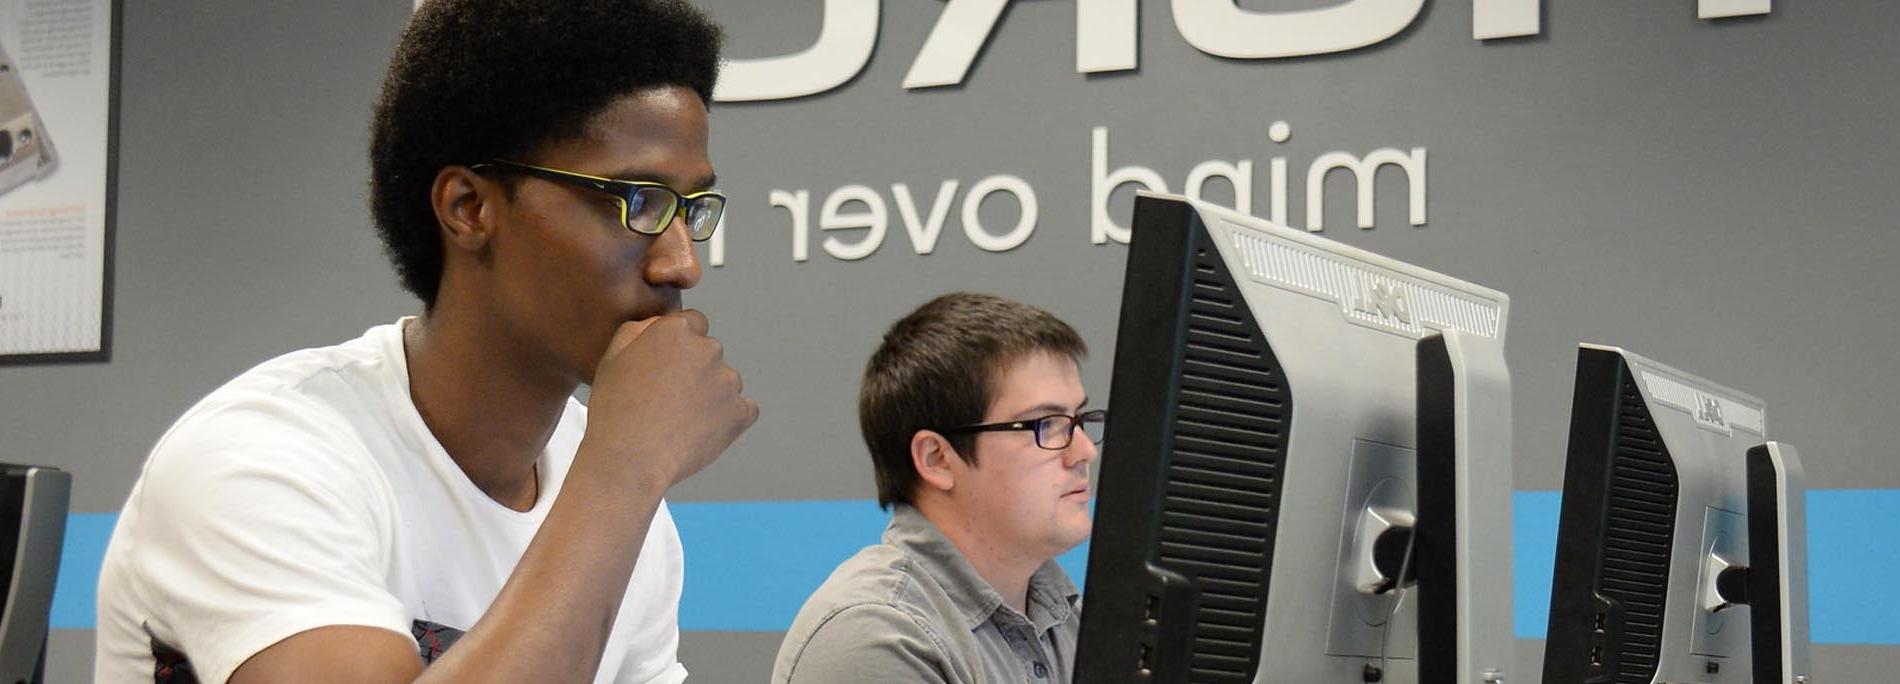 2学生在电脑-帮助链接图像为经济援助